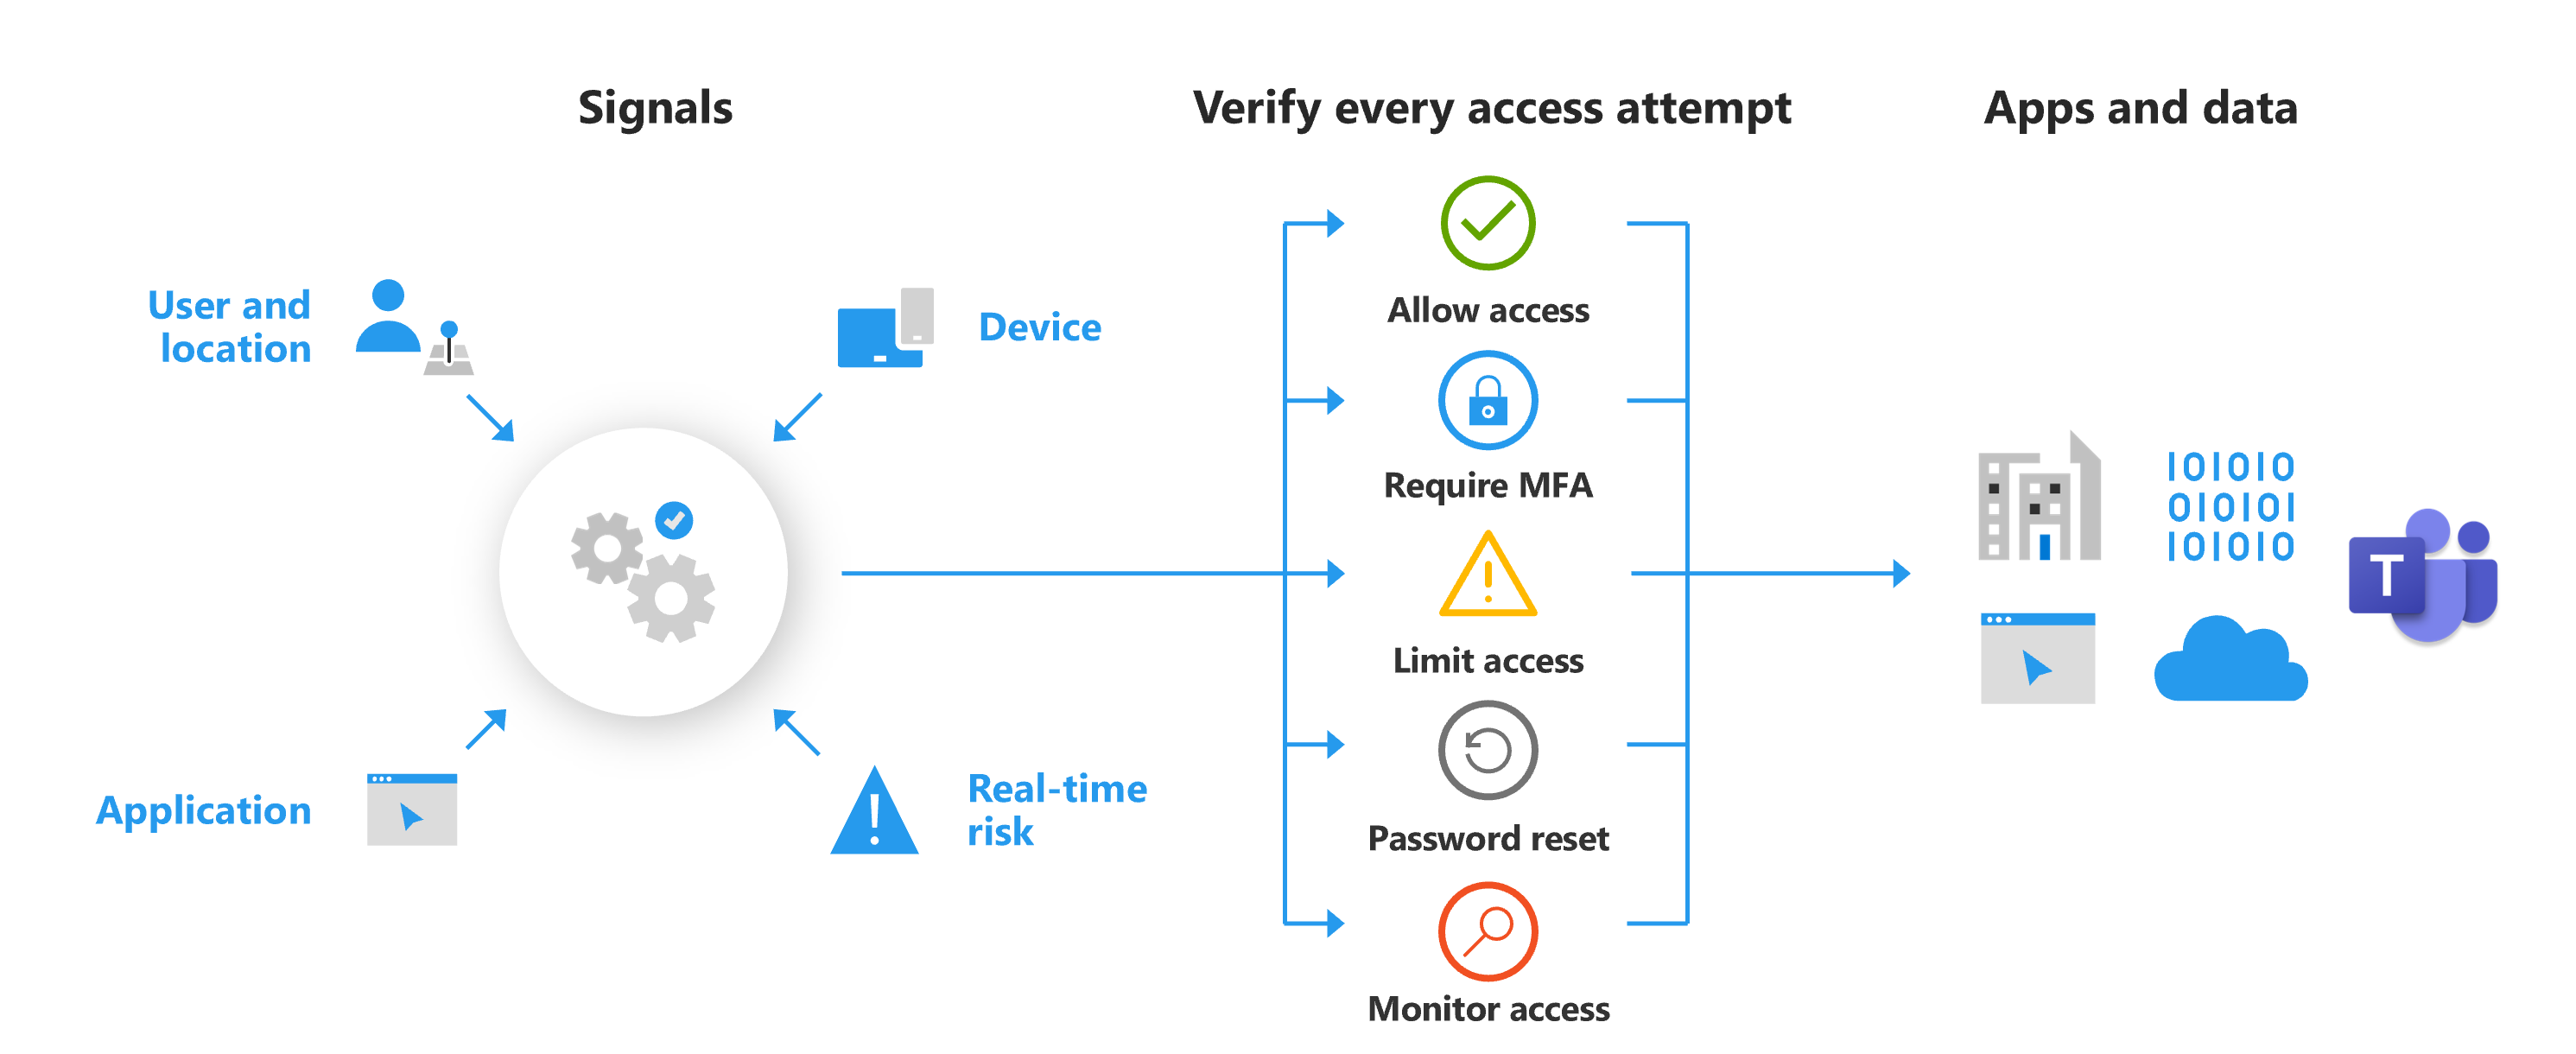 Diagramme montrant les fonctionnalités de la stratégie d’accès conditionnel, notamment autoriser l’accès, exiger l’authentification multifacteur, limiter l’accès, réinitialiser le mot de passe et surveiller l’accès.